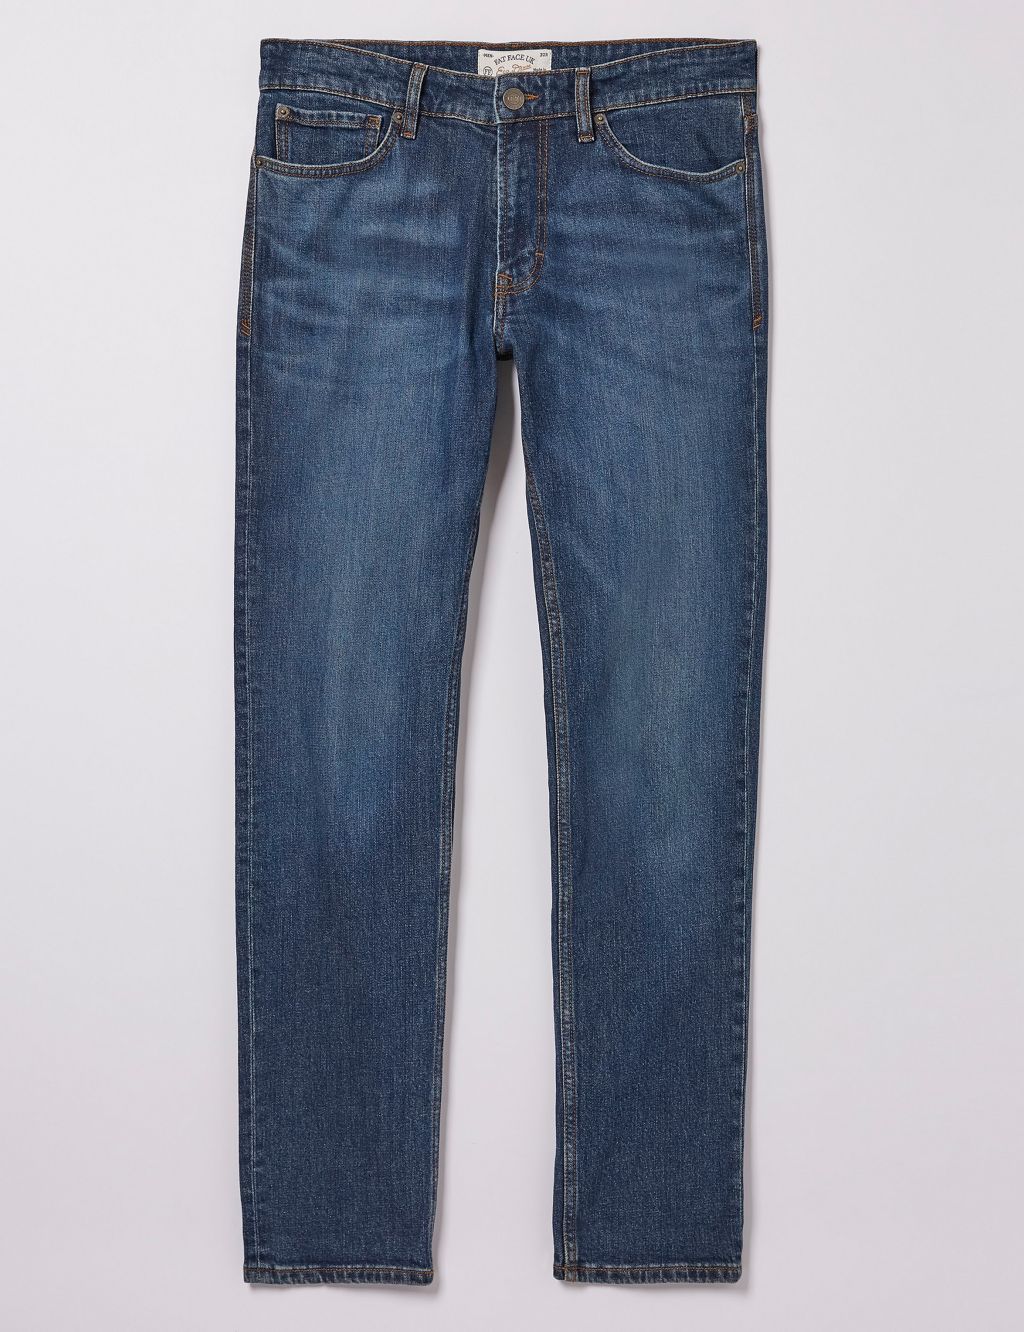 Slim Fit 5 Pocket Mid Wash Jeans image 2